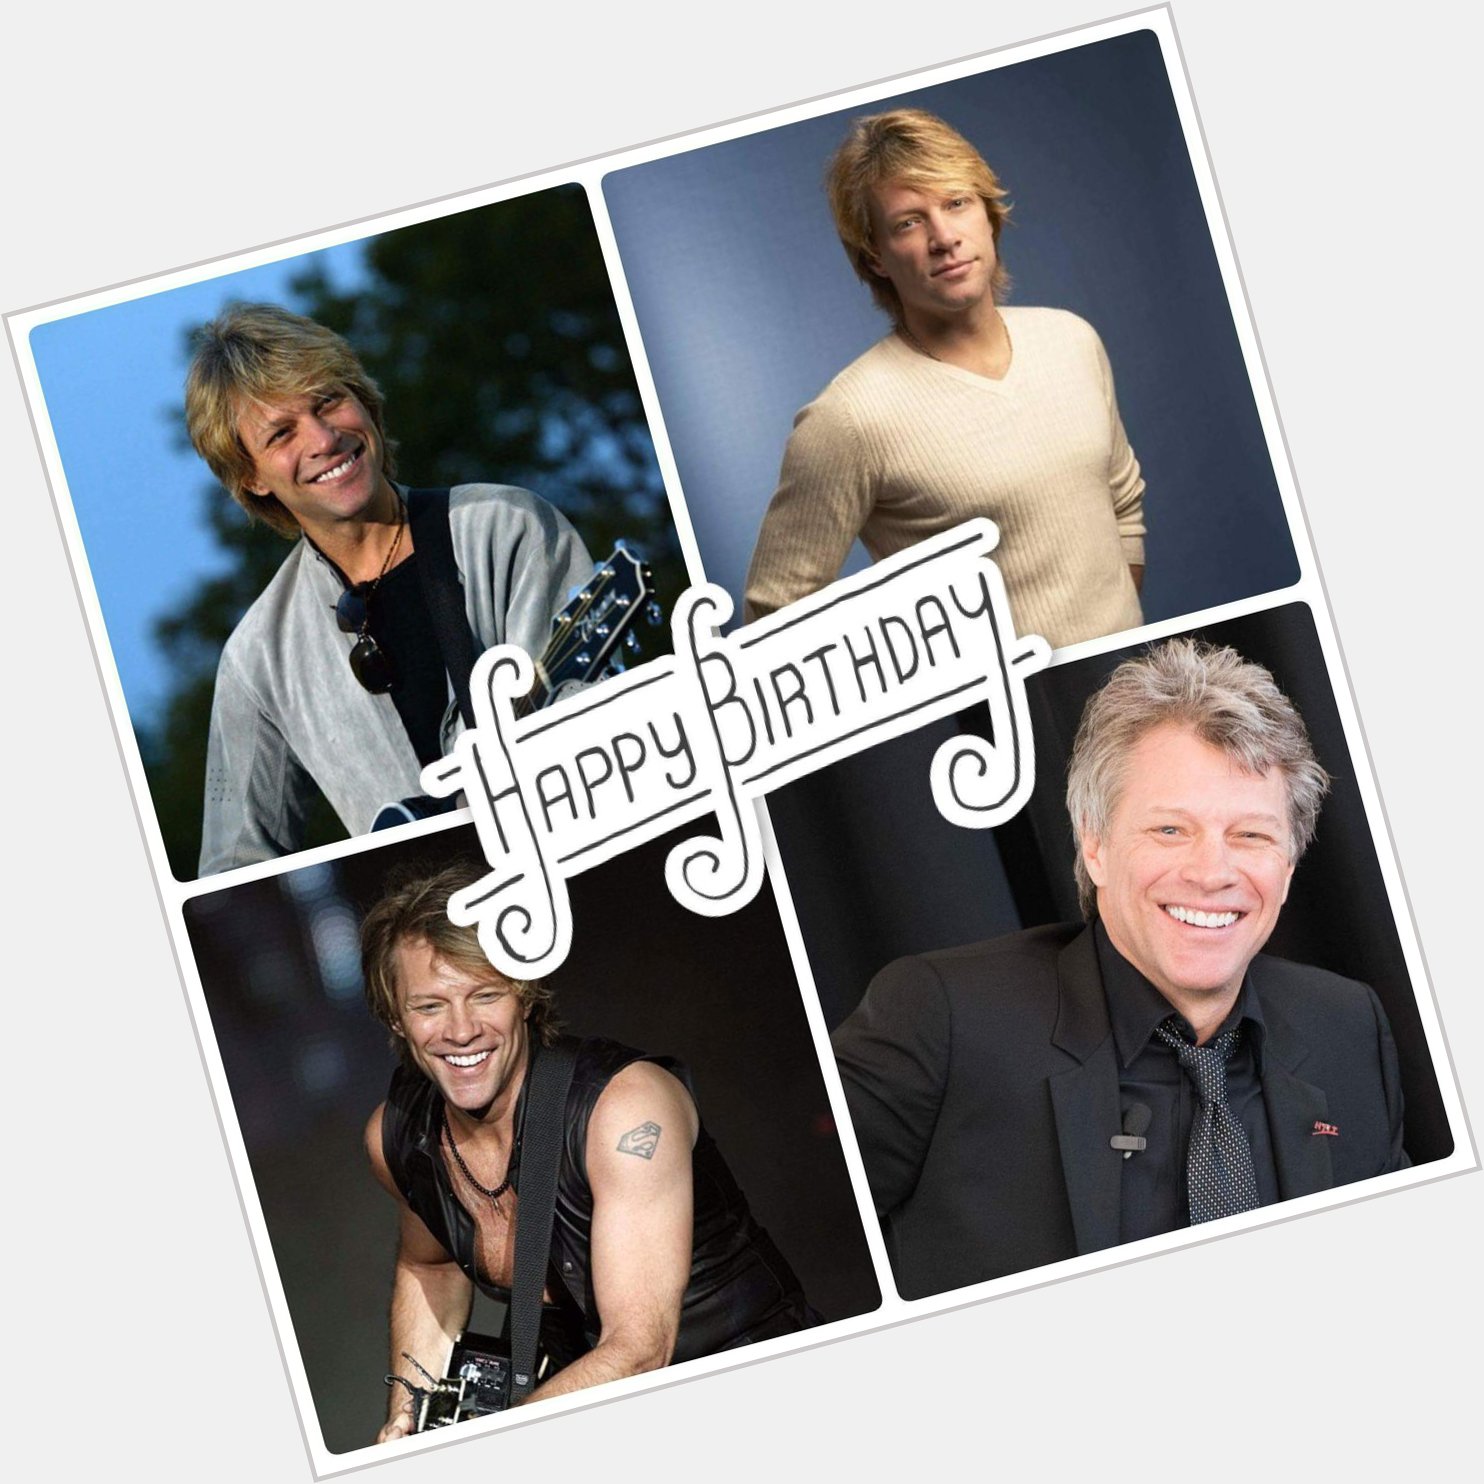 55 never looked so good!!!! Happy birthday Jon Bon Jovi!!!! 